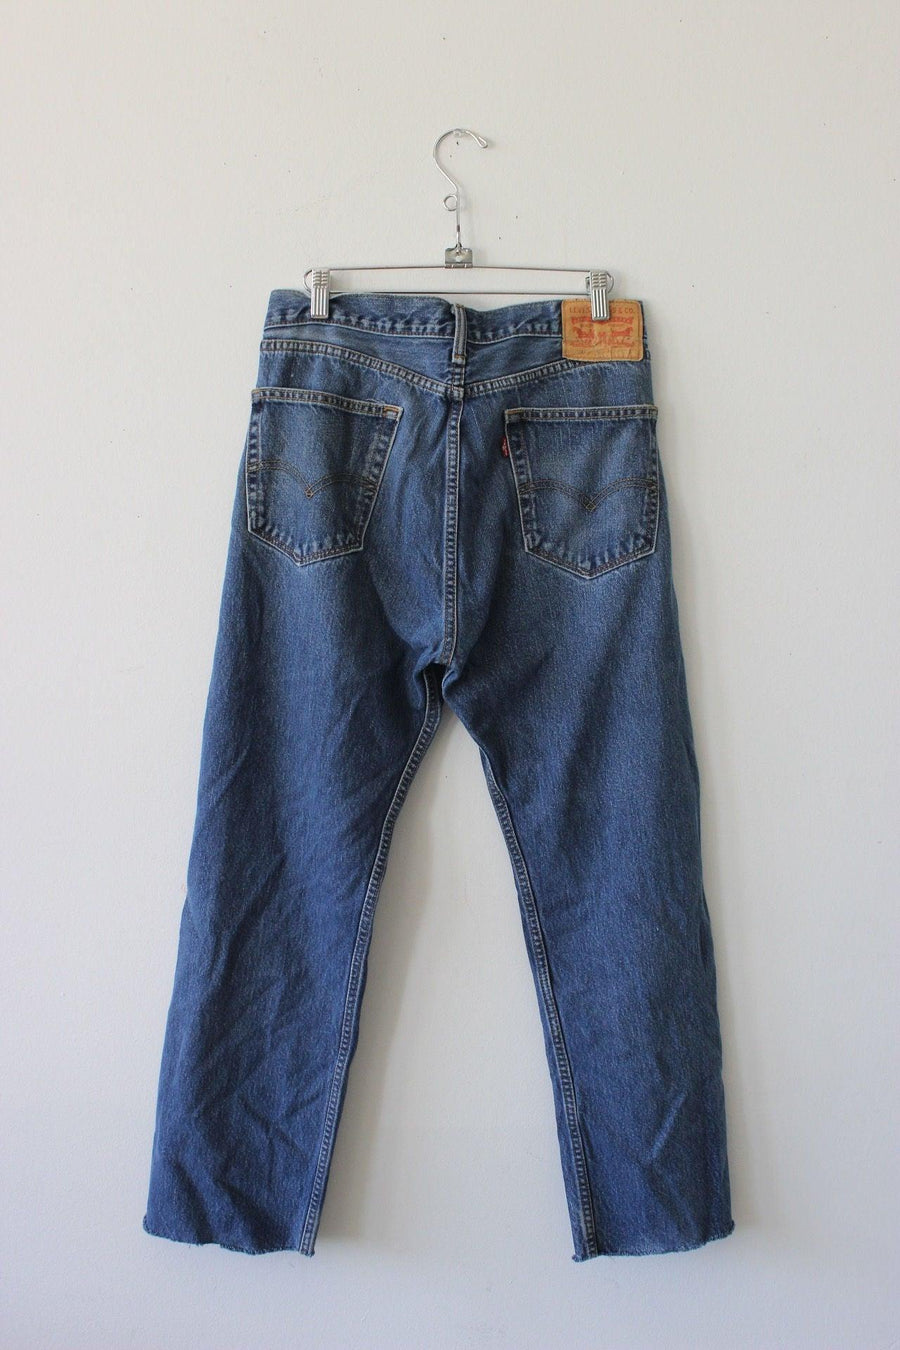 Levi's 505 Jeans by Luna B Vintage - FINAL SALE - SHOPLUNAB